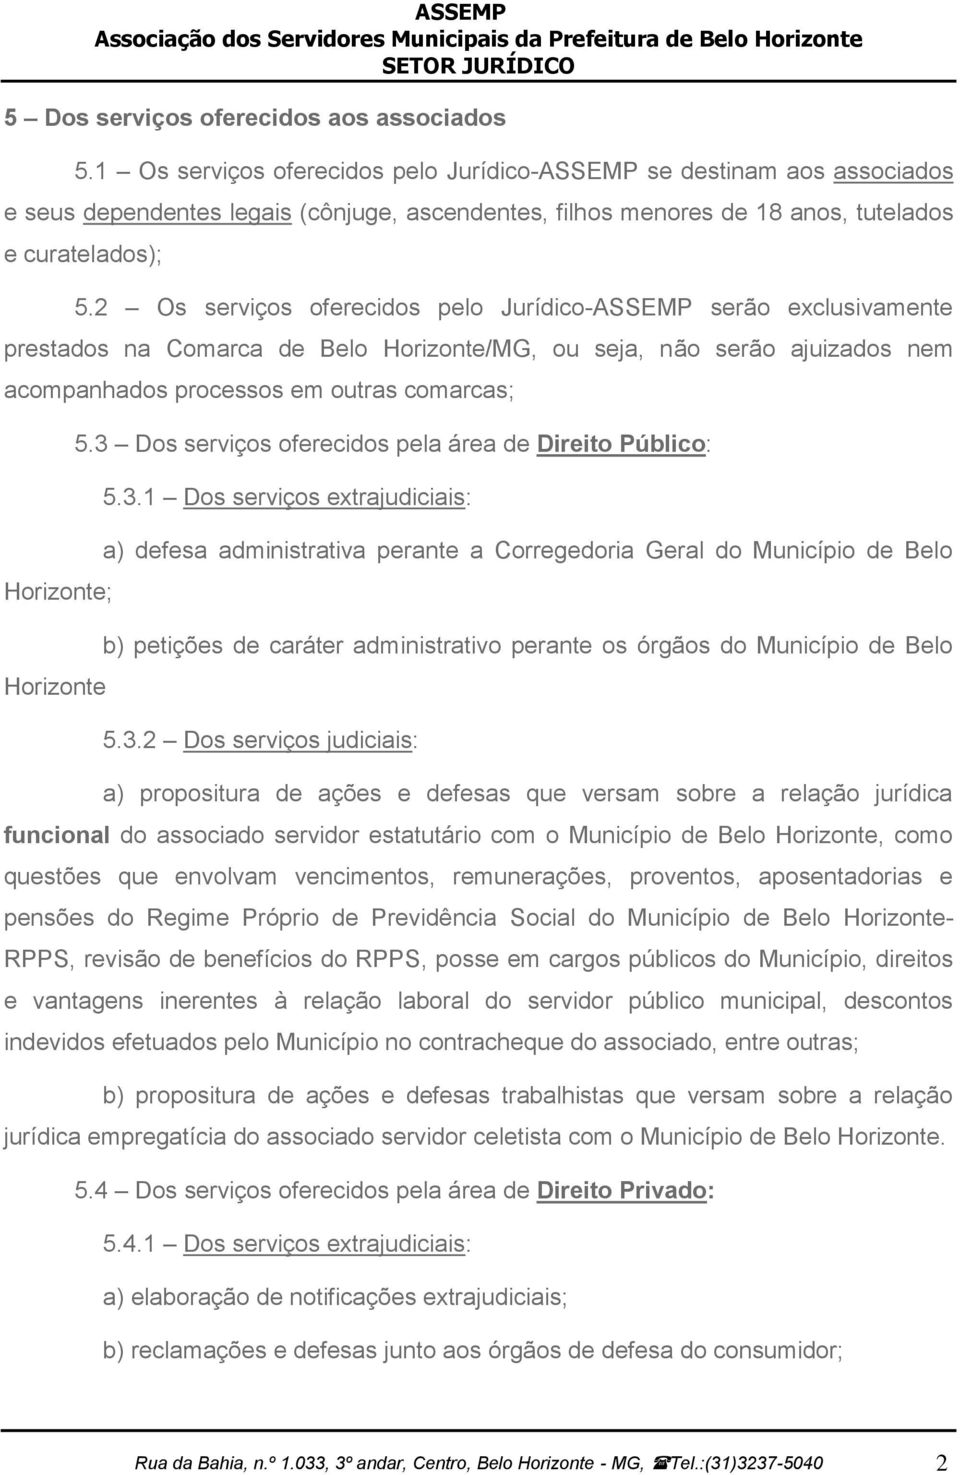 2 Os serviços oferecidos pelo Jurídico-ASSEMP serão exclusivamente prestados na Comarca de Belo Horizonte/MG, ou seja, não serão ajuizados nem acompanhados processos em outras comarcas; Horizonte;